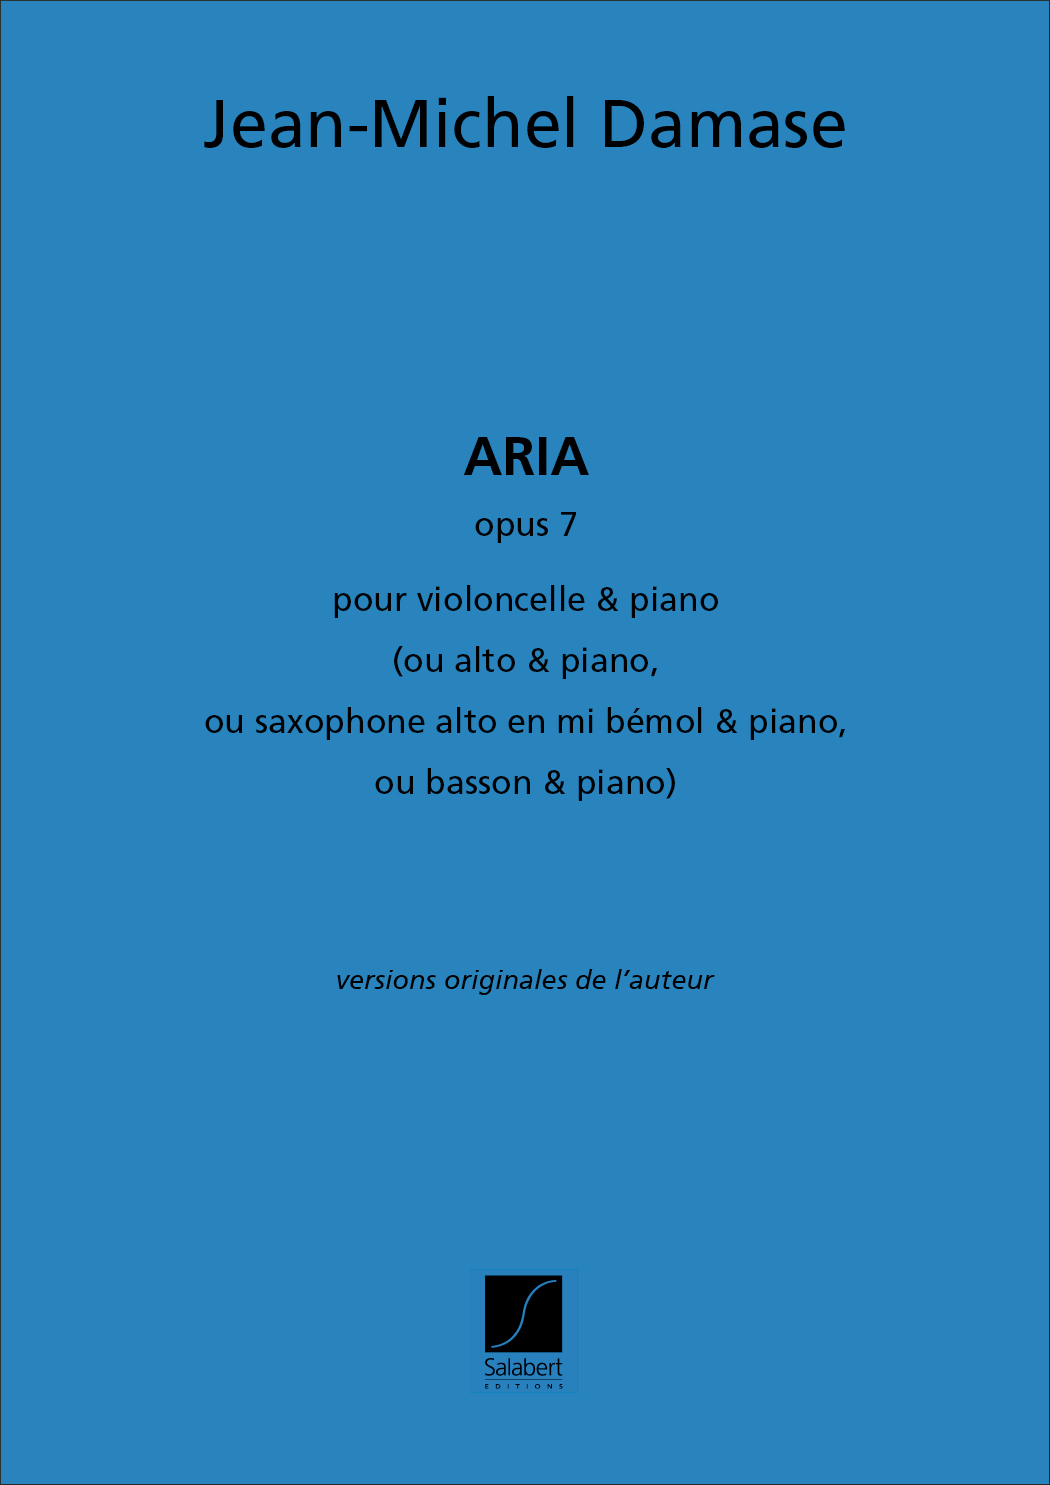 Jean-Michel Damase: Aria Opus 7 pour violoncelle et piano: Cello